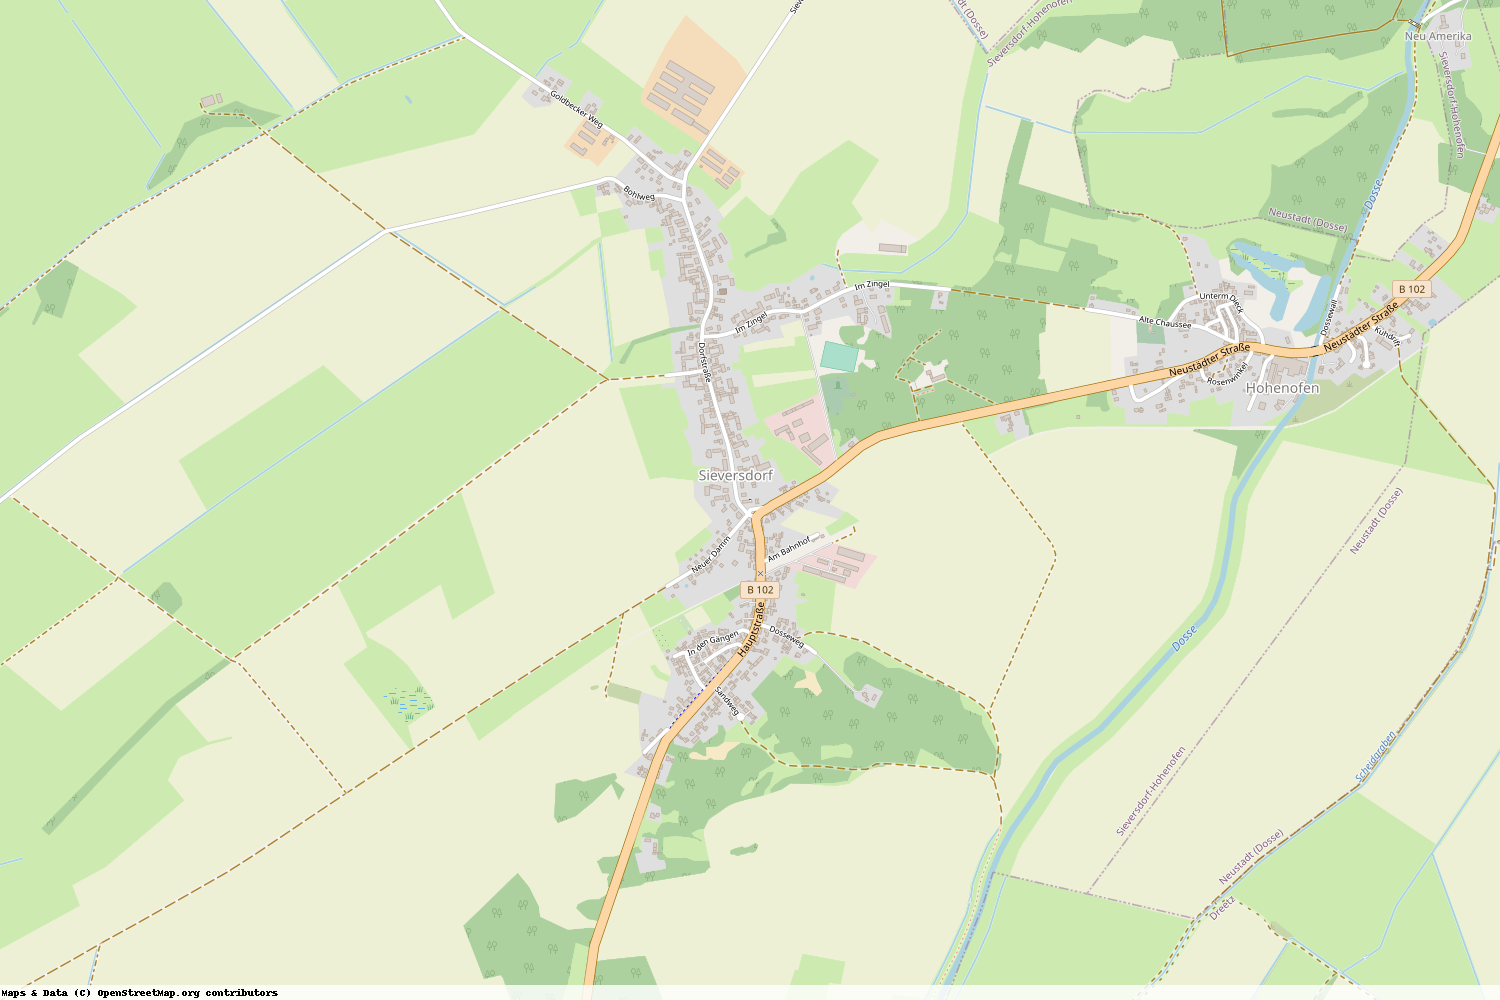 Ist gerade Stromausfall in Brandenburg - Ostprignitz-Ruppin - Sieversdorf-Hohenofen?